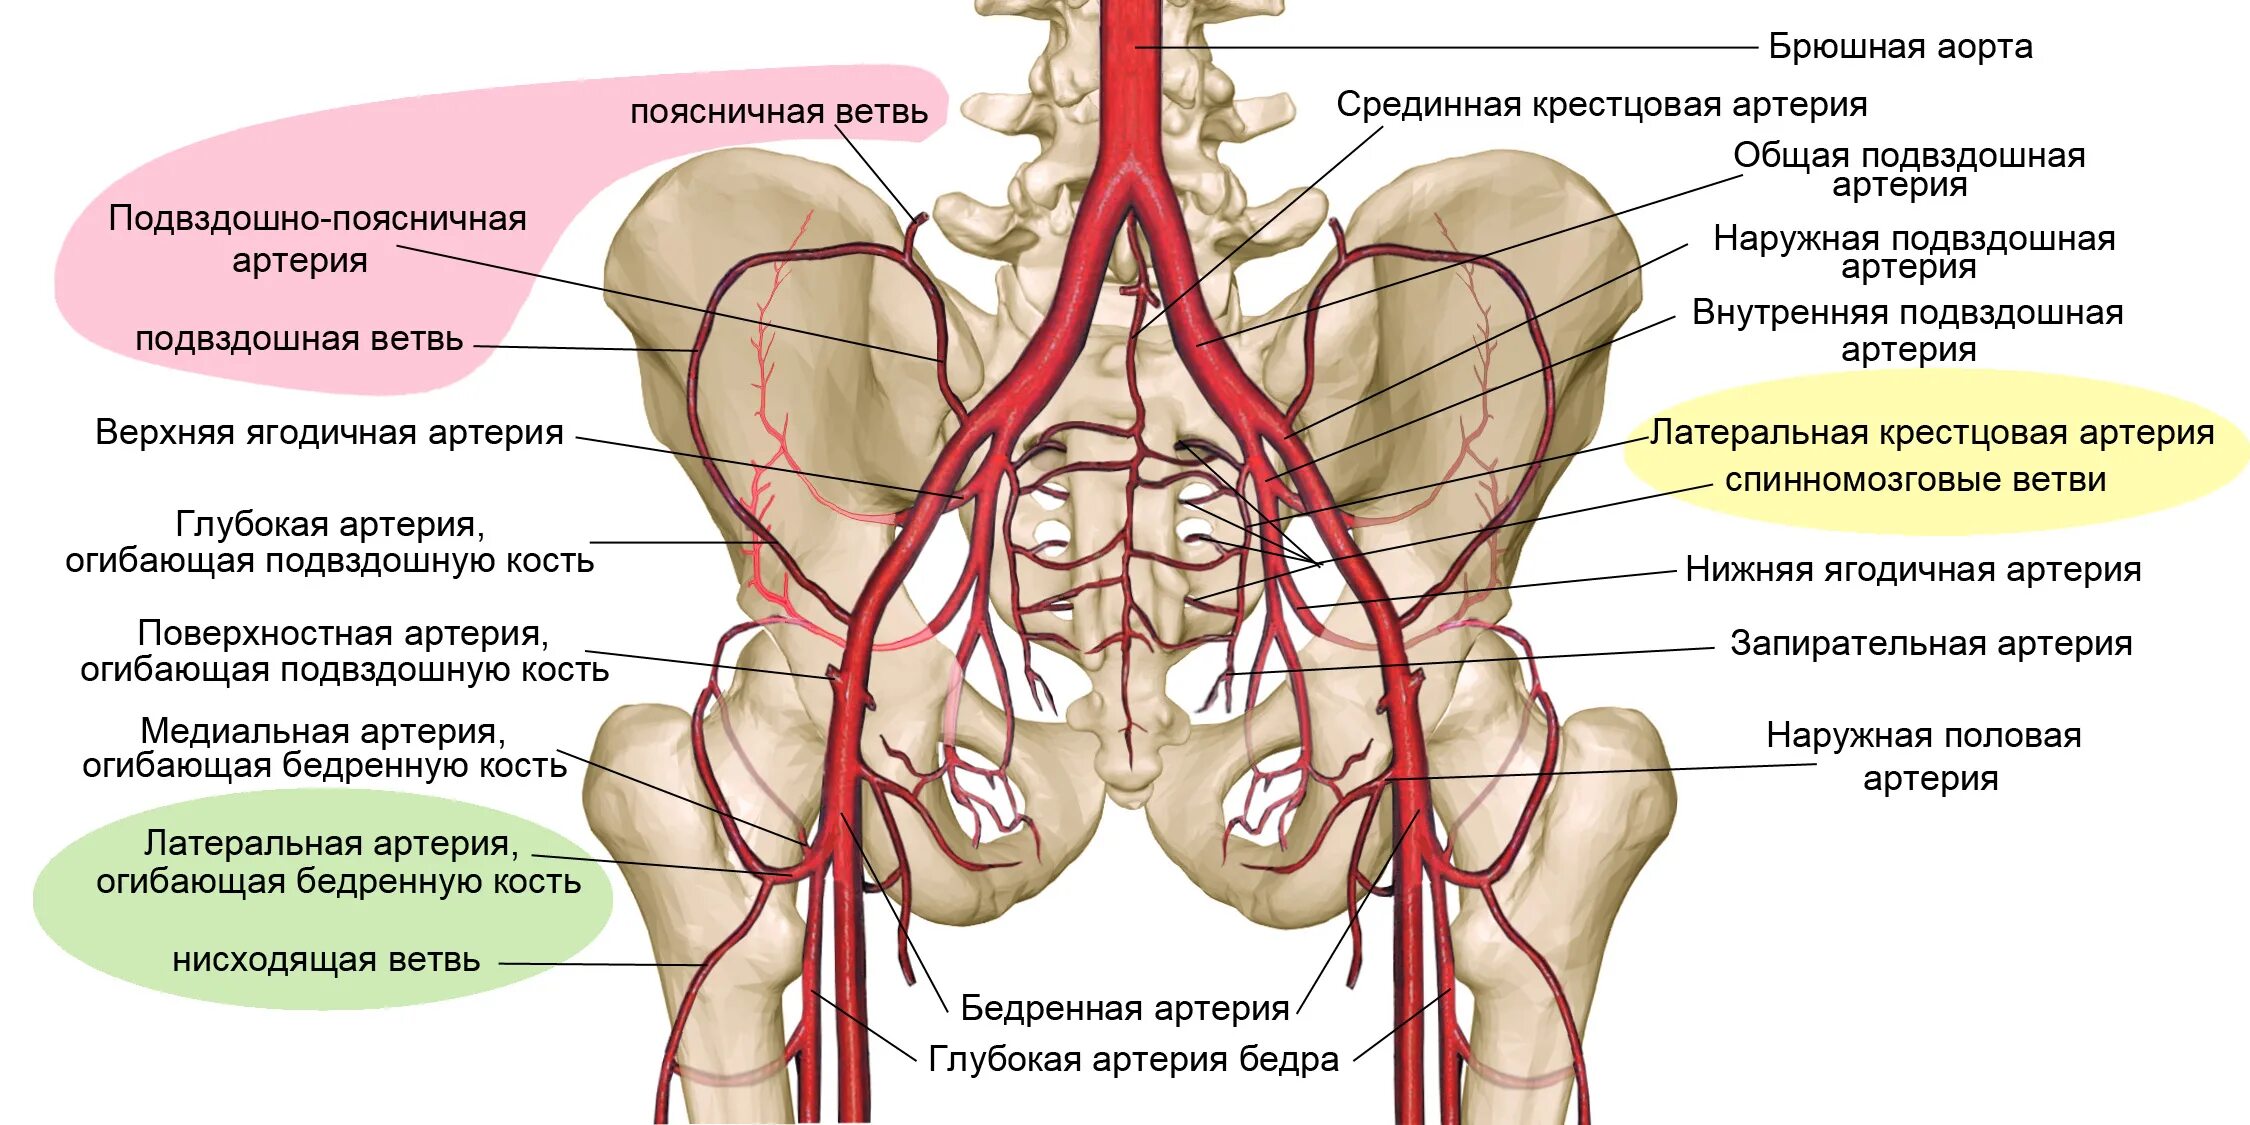 Ветви внутренней подвздошной артерии. Ветви общей подвздошной артерии схема. Ветви наружной подвздошной артерии анатомия. Ветви внутренней подвздошной артерии анатомия. Кровообращение костей